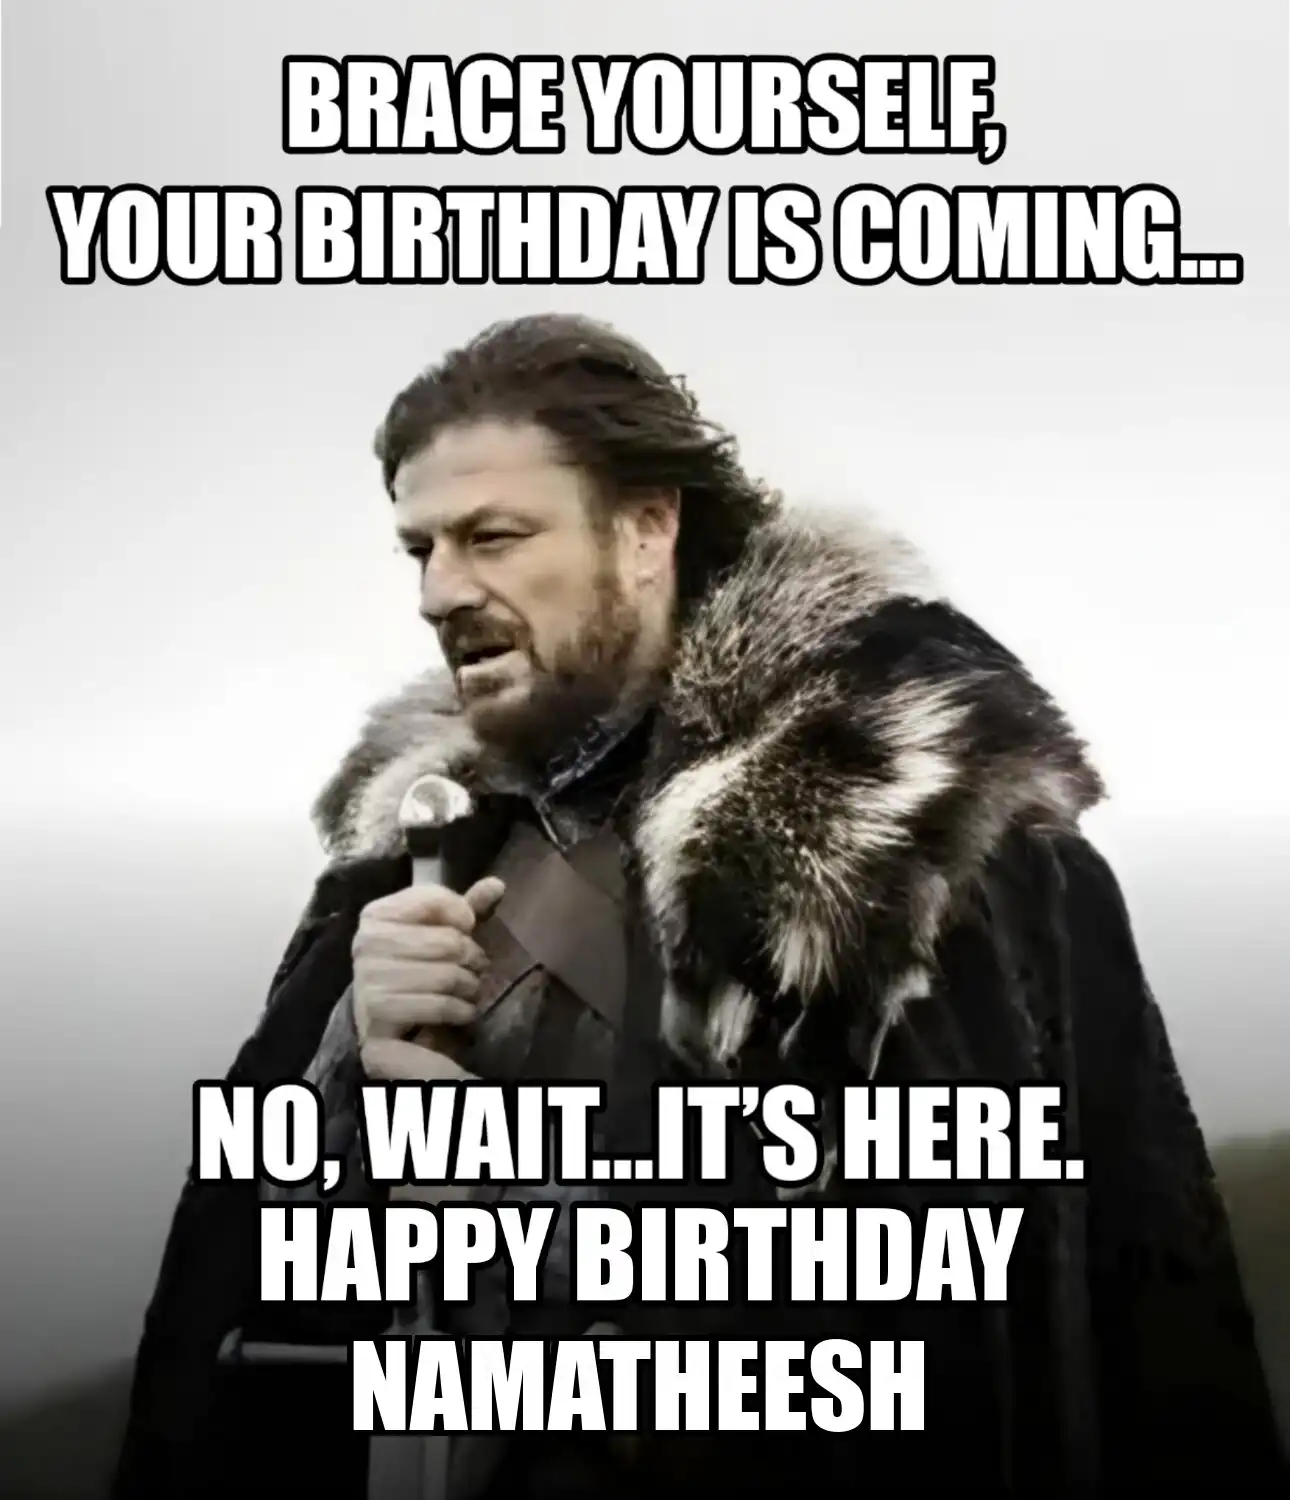 Happy Birthday Namatheesh Brace Yourself Your Birthday Is Coming Meme